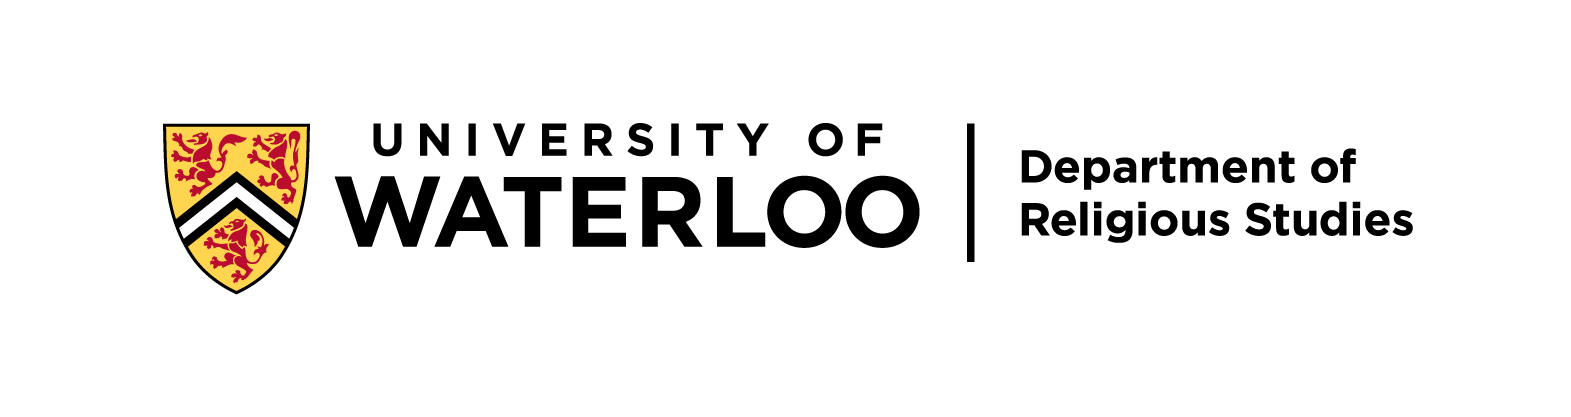 Uwaterloo logo